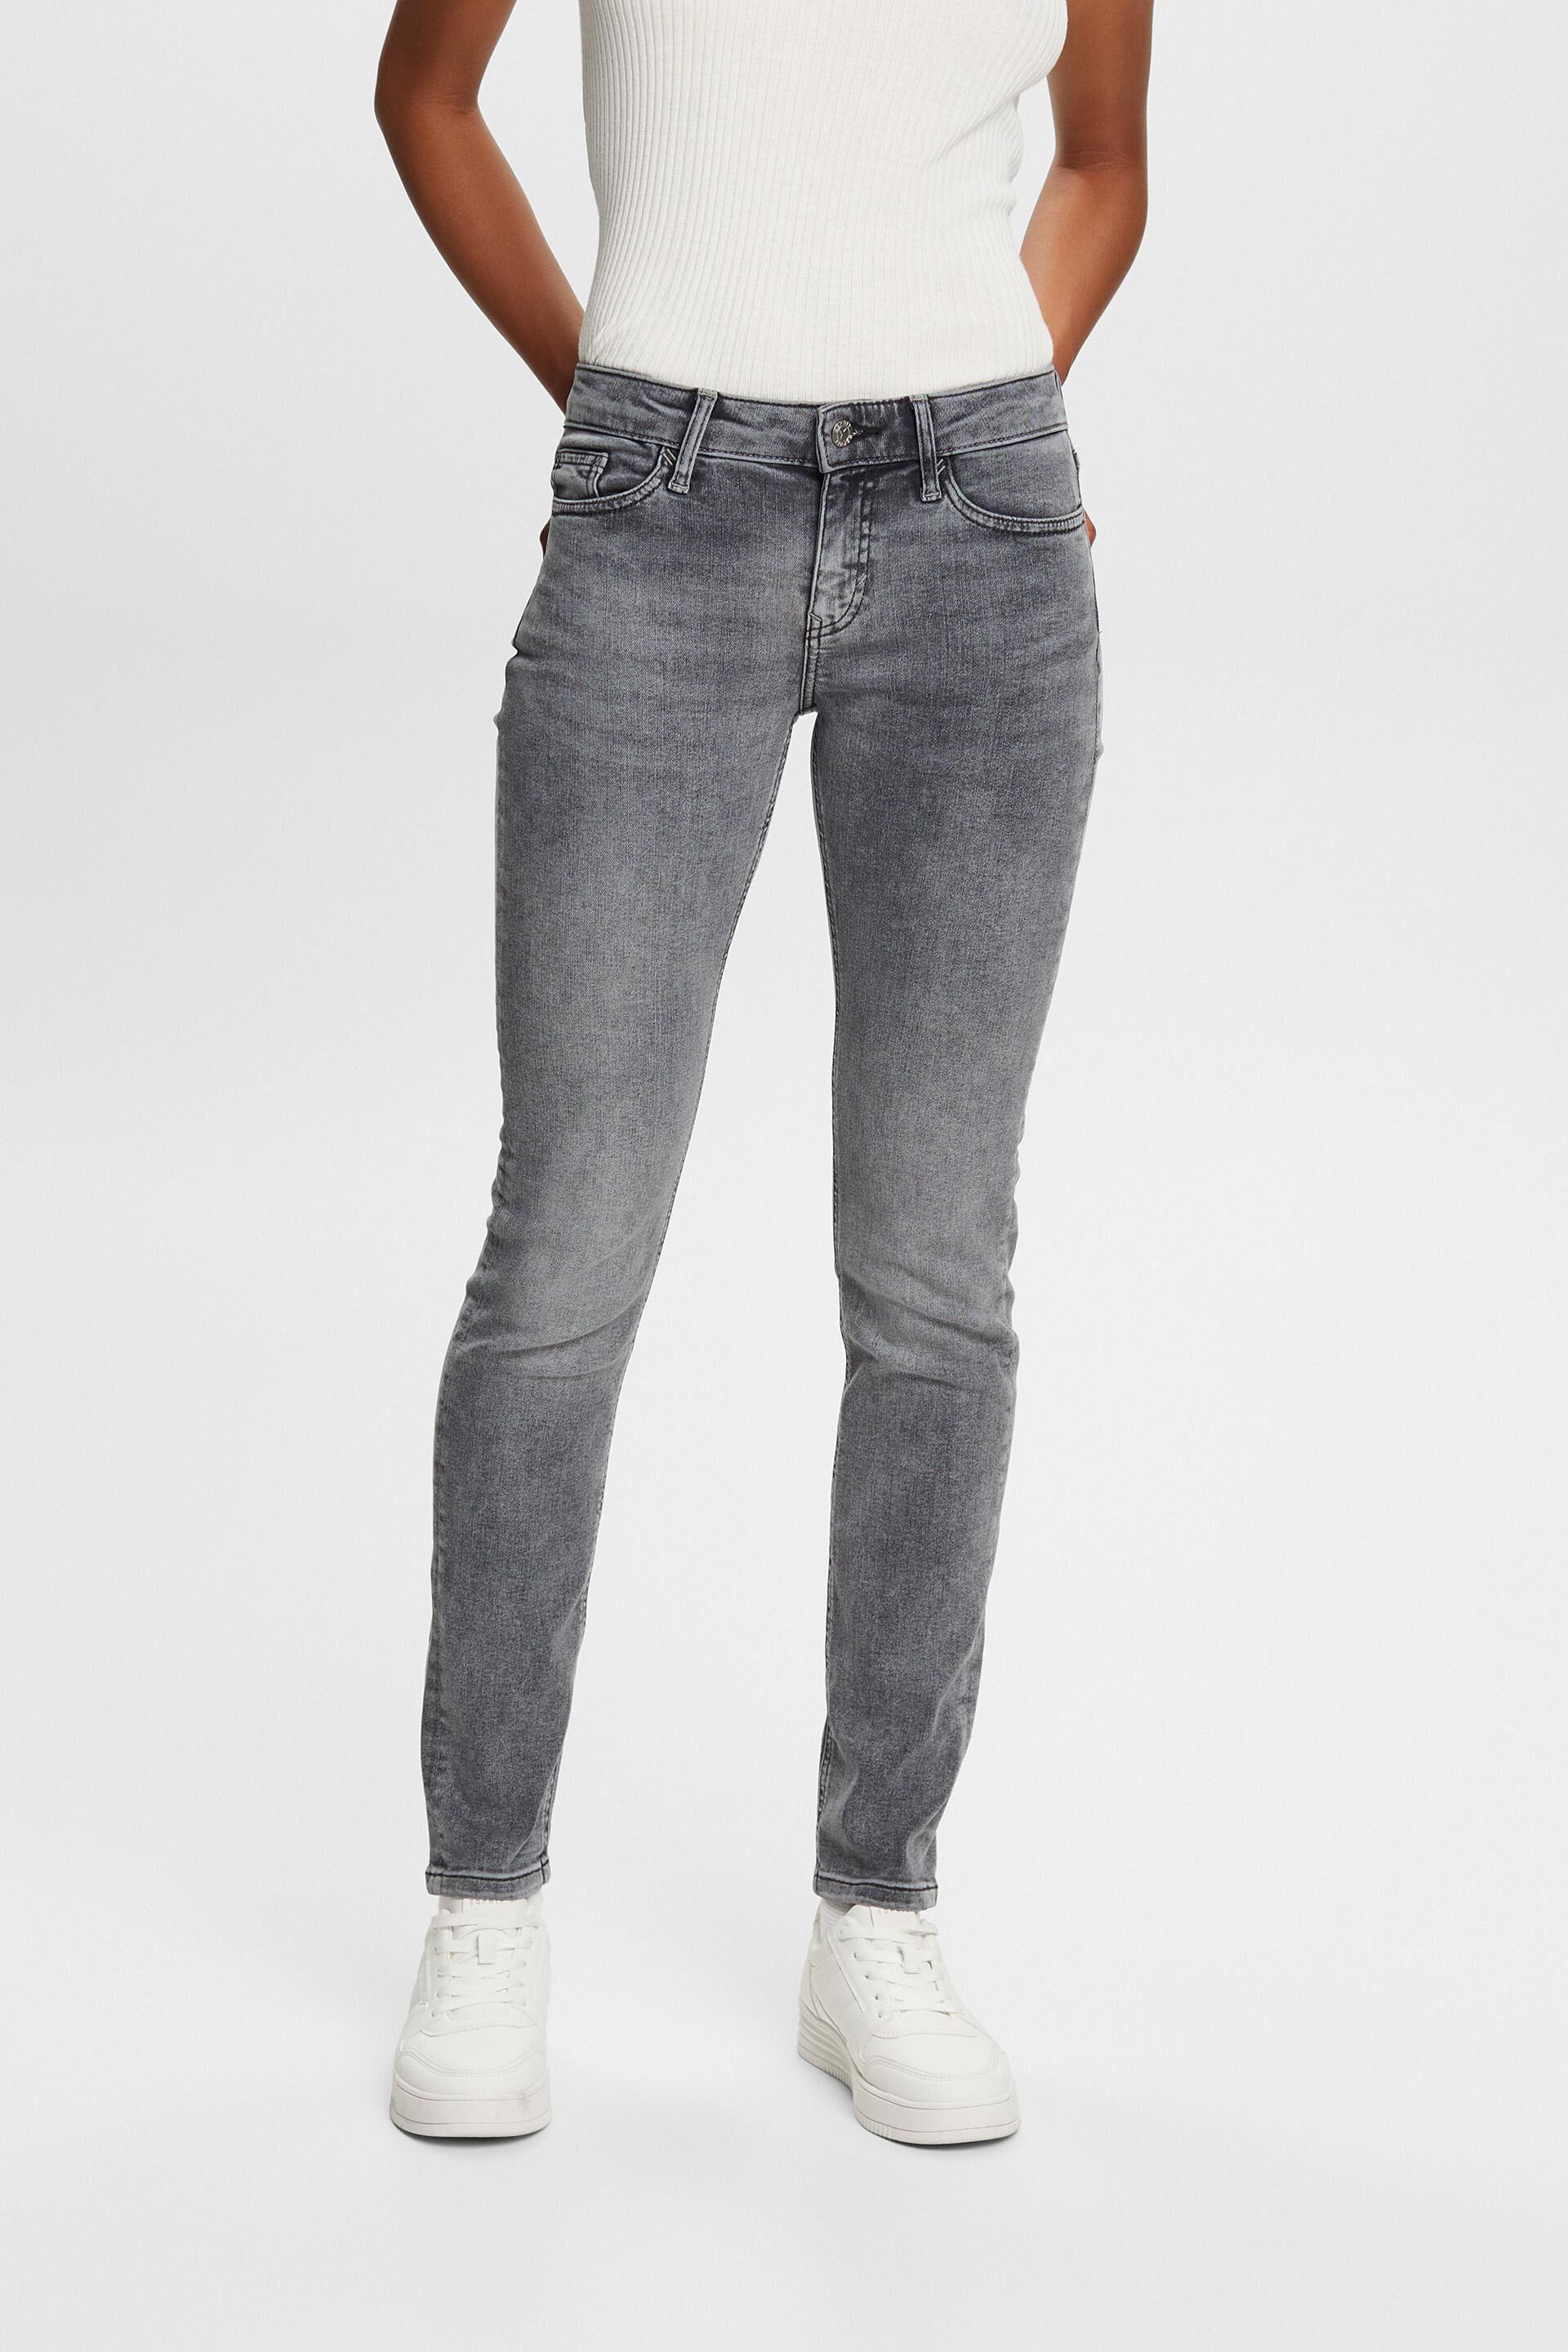 Esprit Slim Mid-Rise Jeans